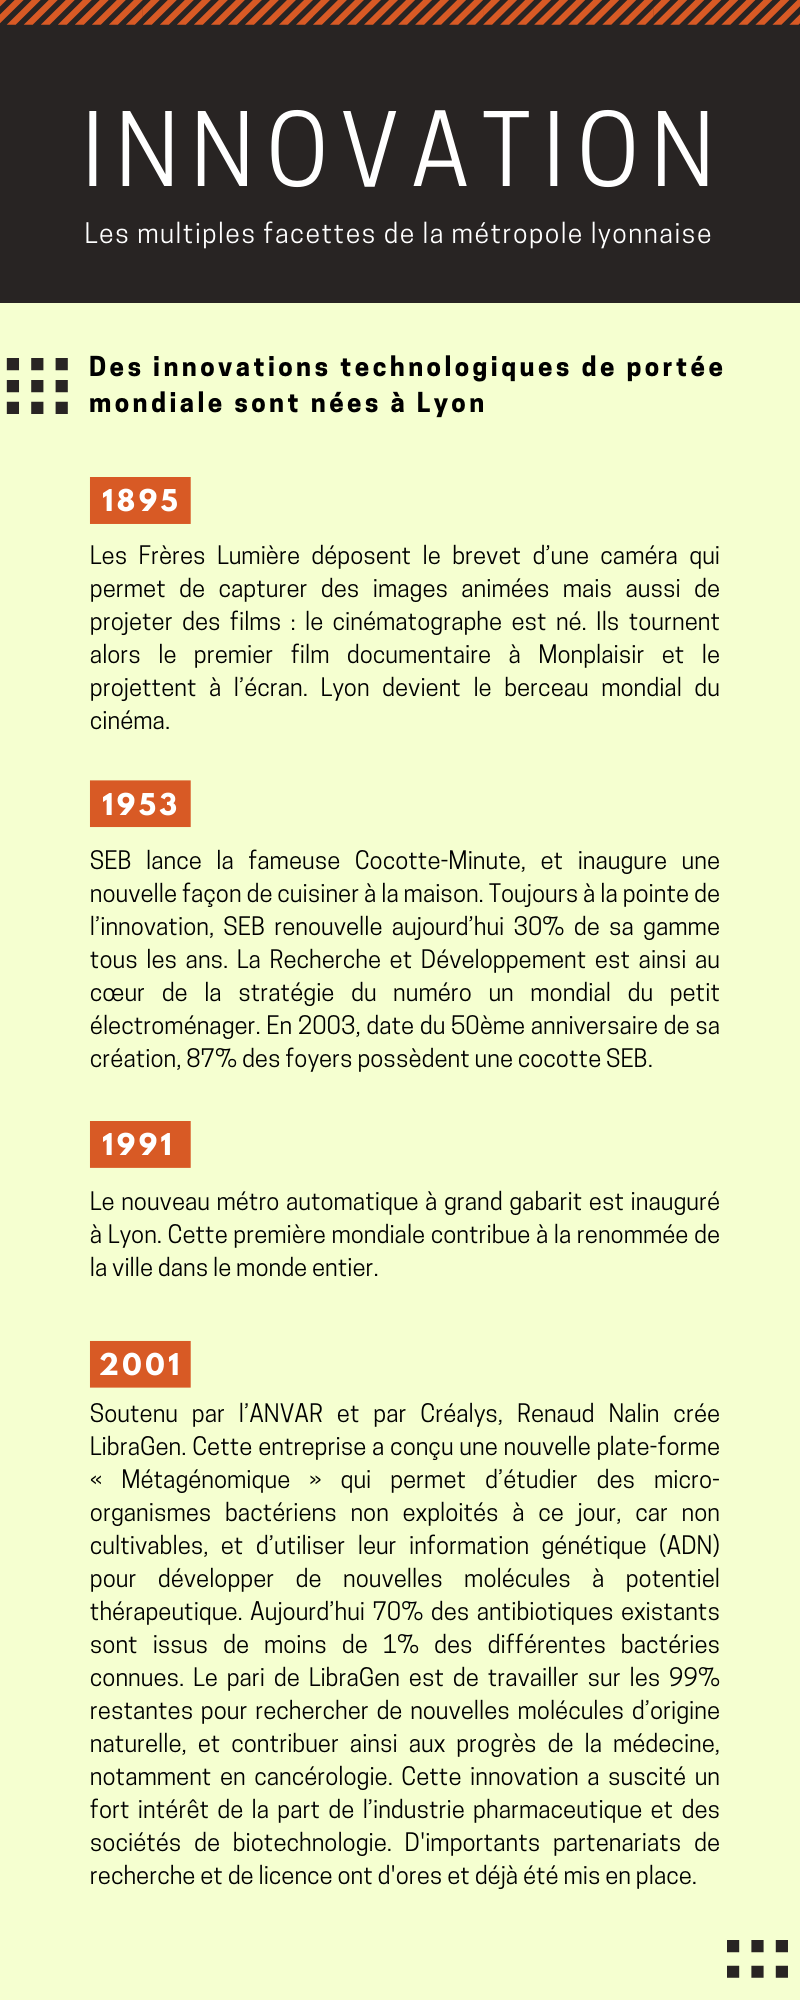 Chronologie des innovations technologiques de portée mondiales nées à Lyon de 1895 à 2001